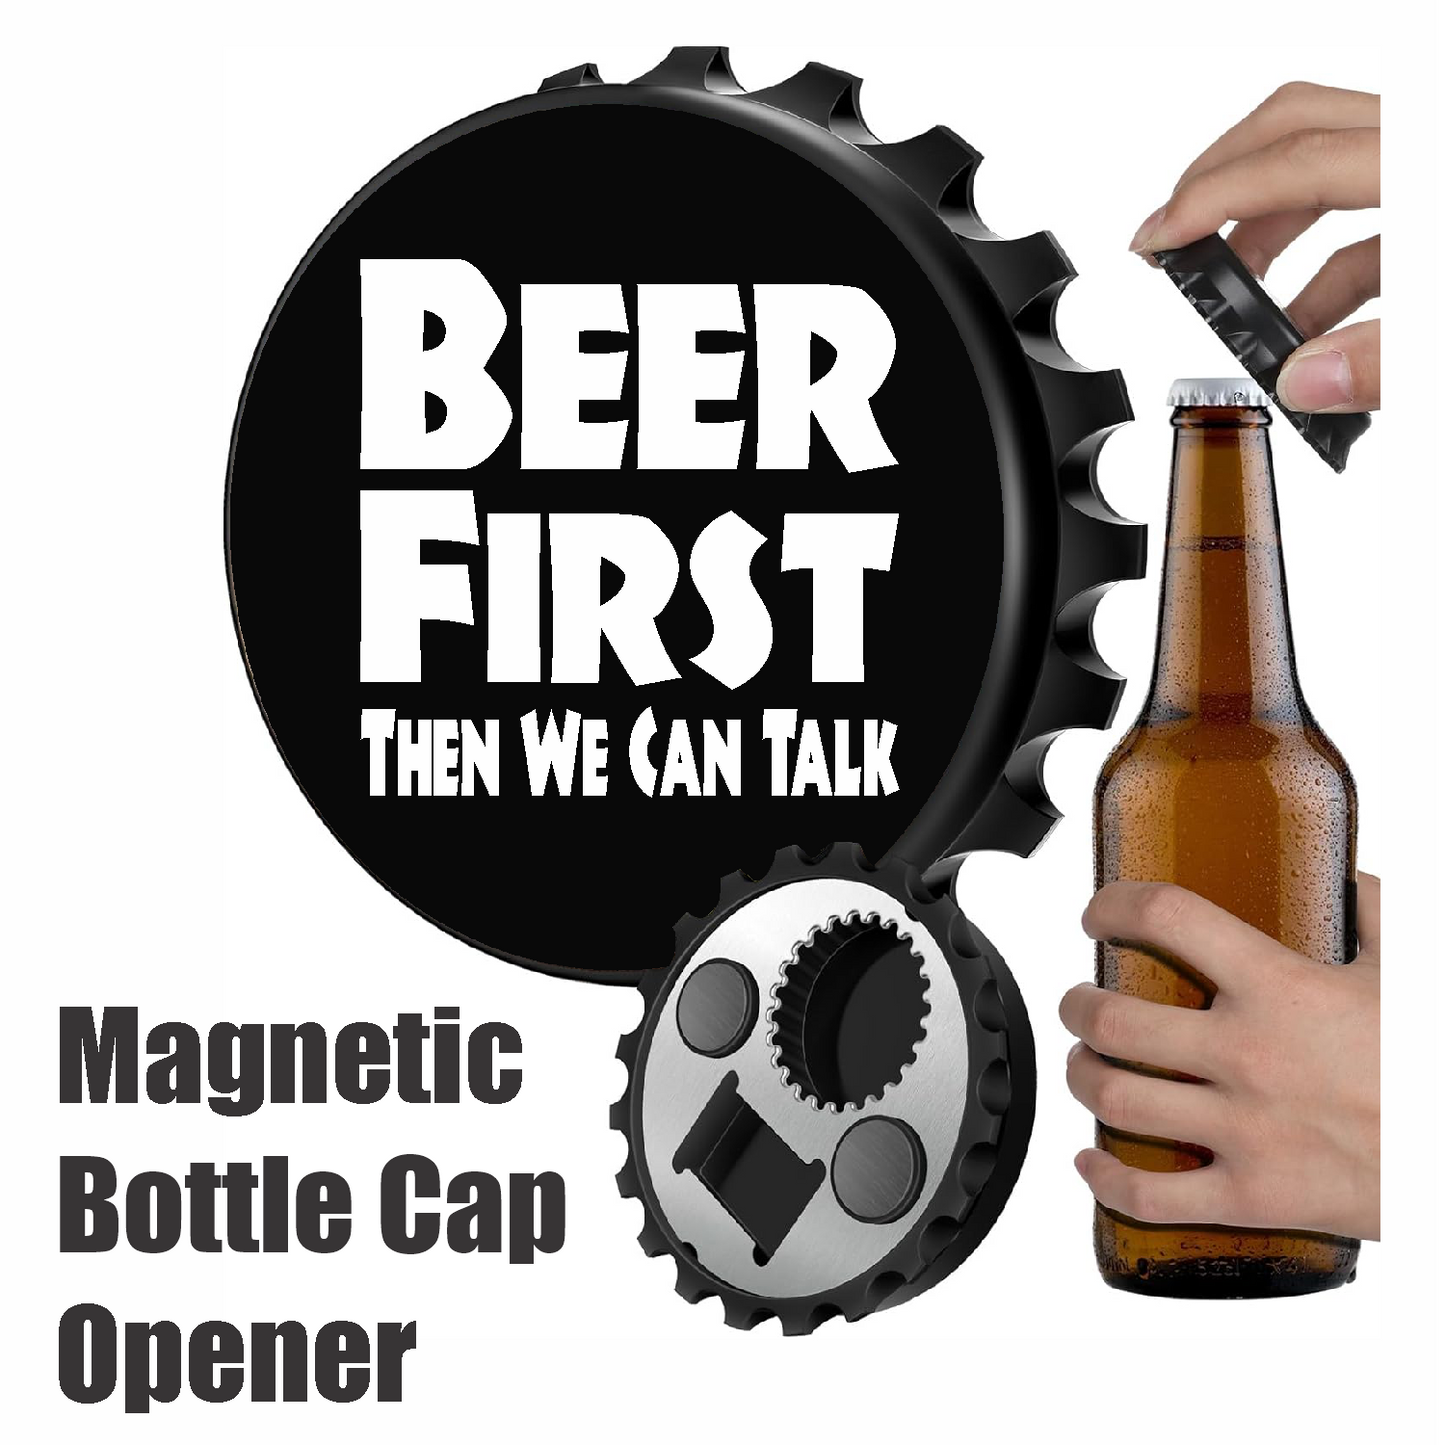 BEER FIRST Then We Can Talk - Designer Beer Bottle Opener Magnet for Refrigerator, Gifts for Beer Lovers, Black